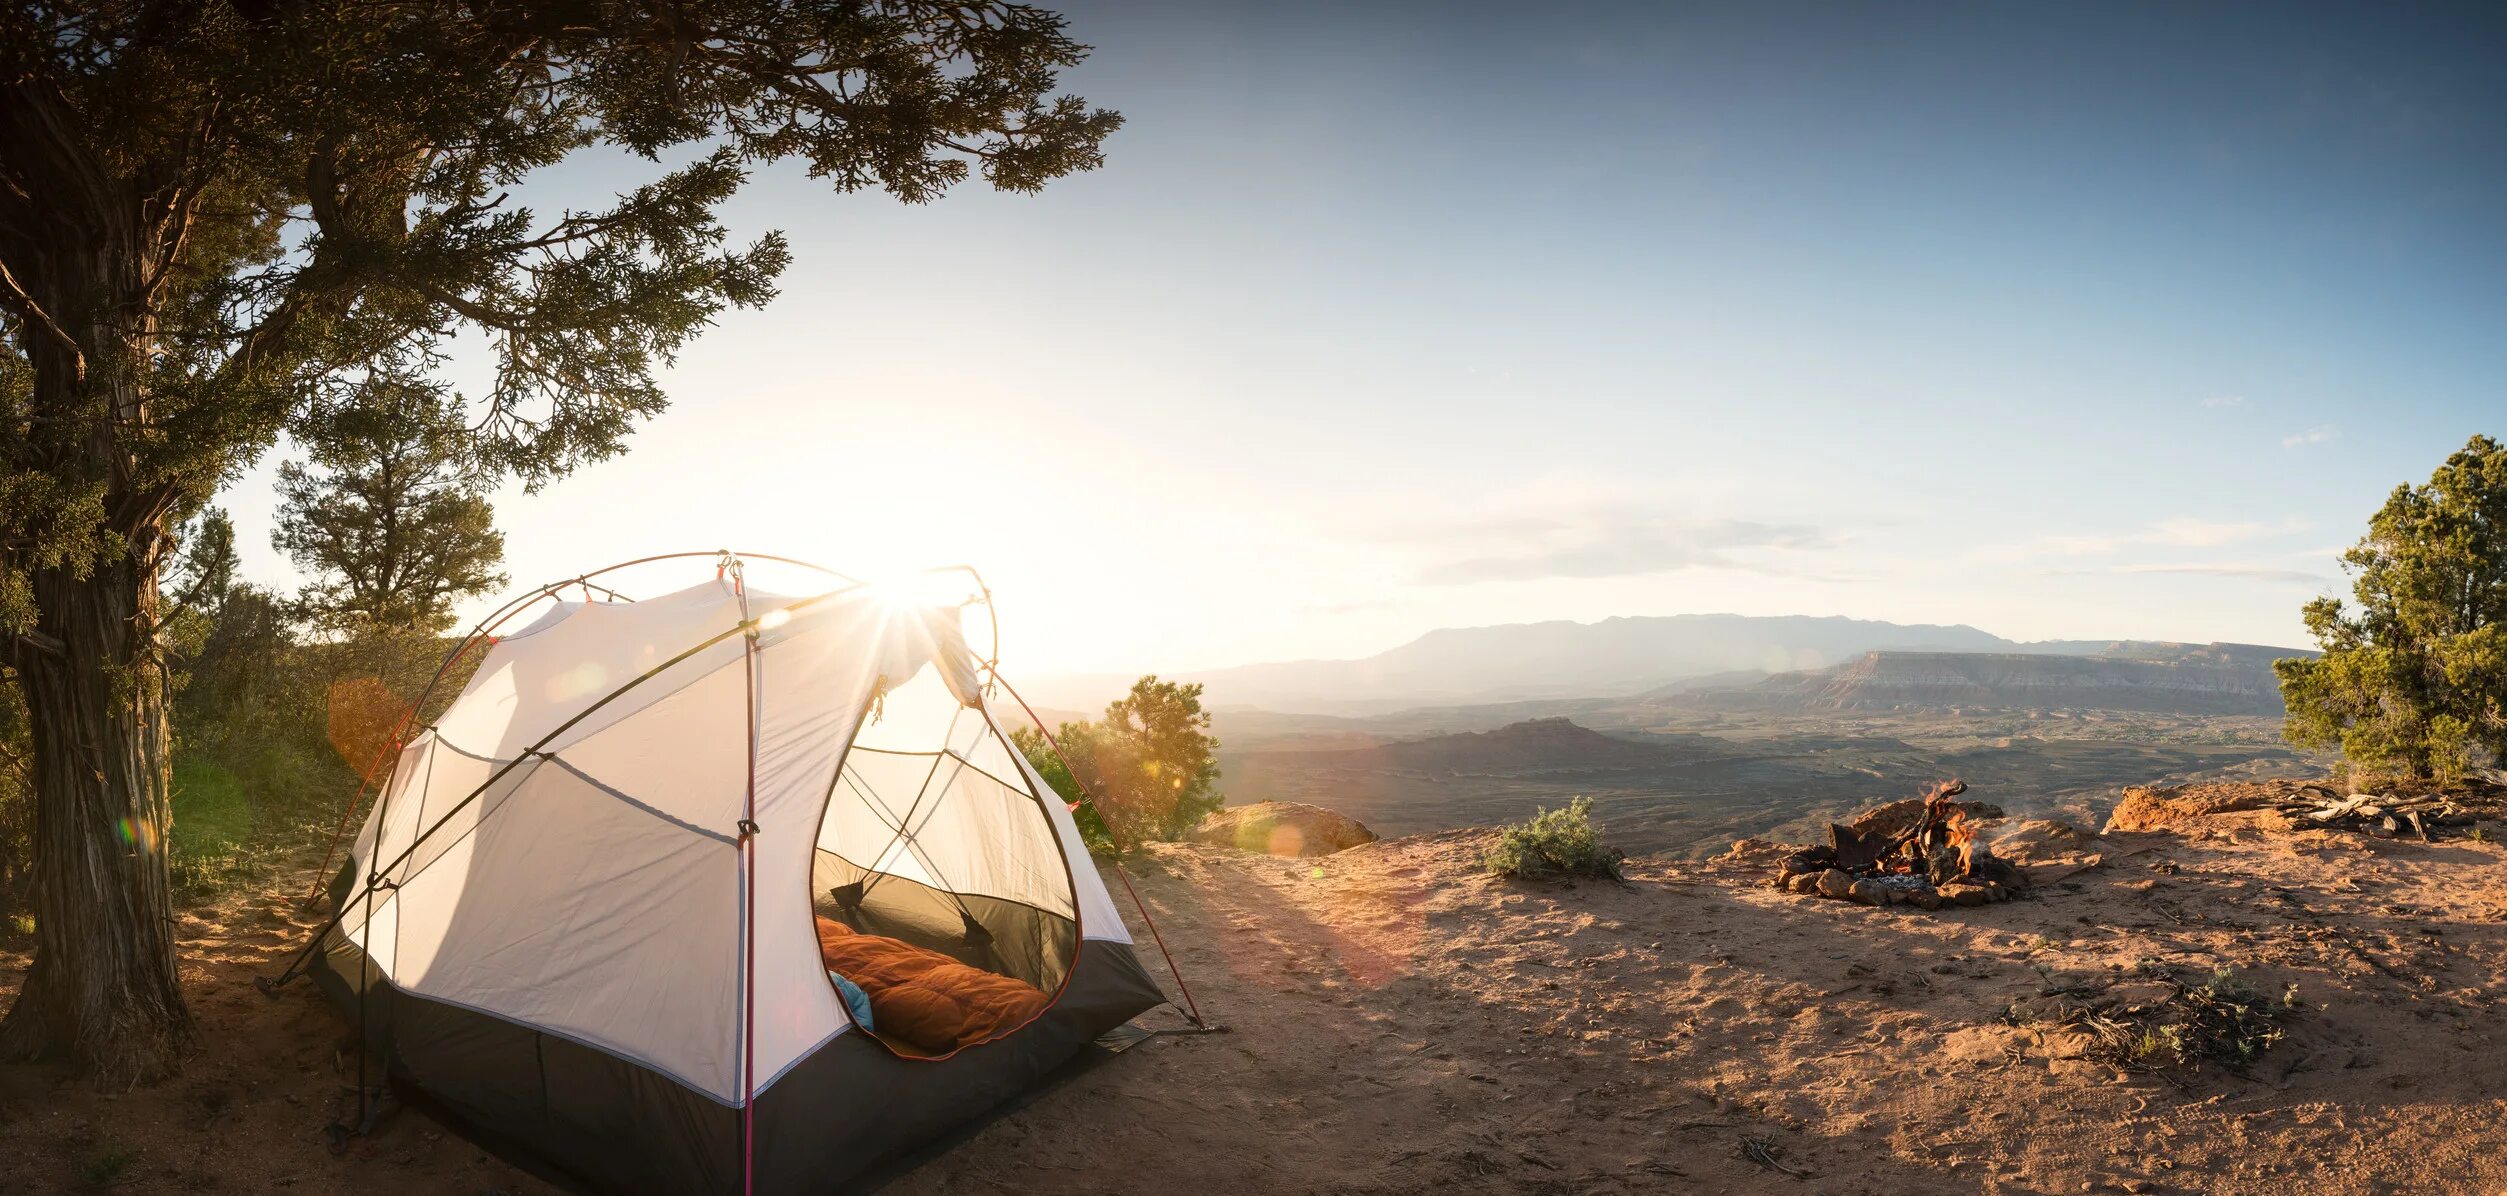 Палатка Camping Tent. Палатка Orange Solar Tent. Best Camp палатки. Палатка Outdoor Tent 5м 2513. Travel camp